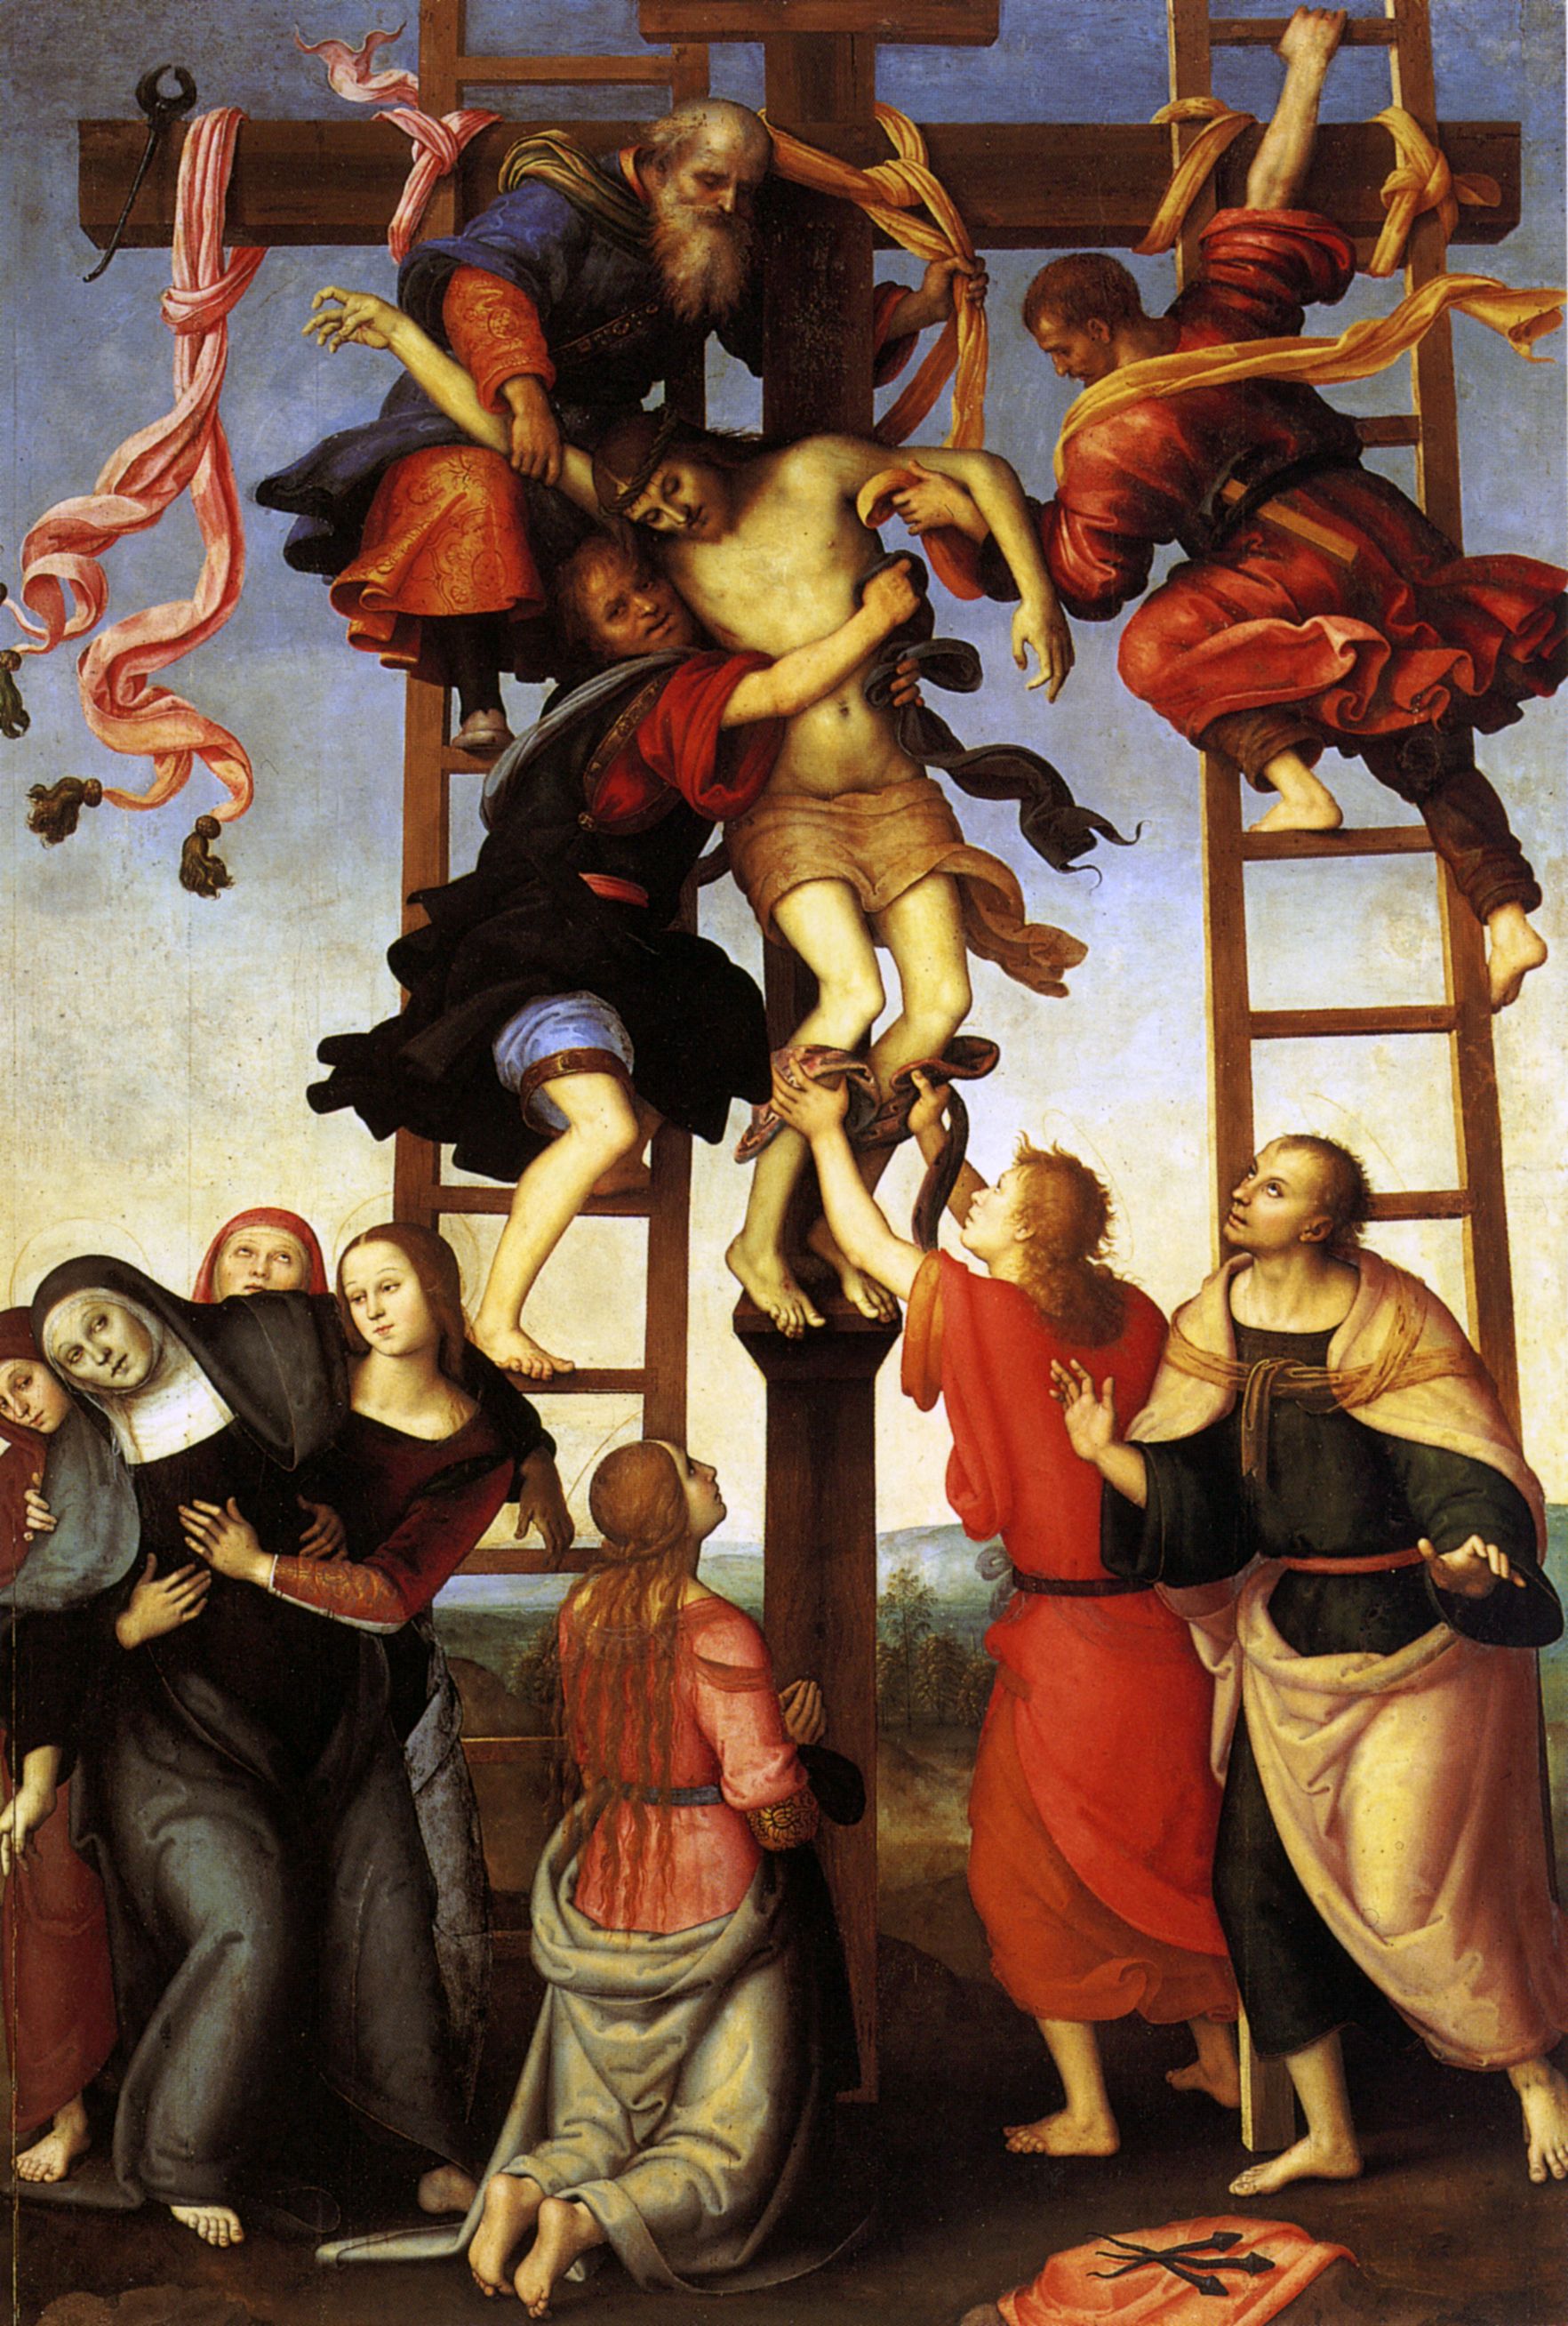 Filippino Lippi e Perugino, Deposizione (1504-1507; olio su tavola, 334 x 225 cm; Firenze, Galleria dell'Accademia)